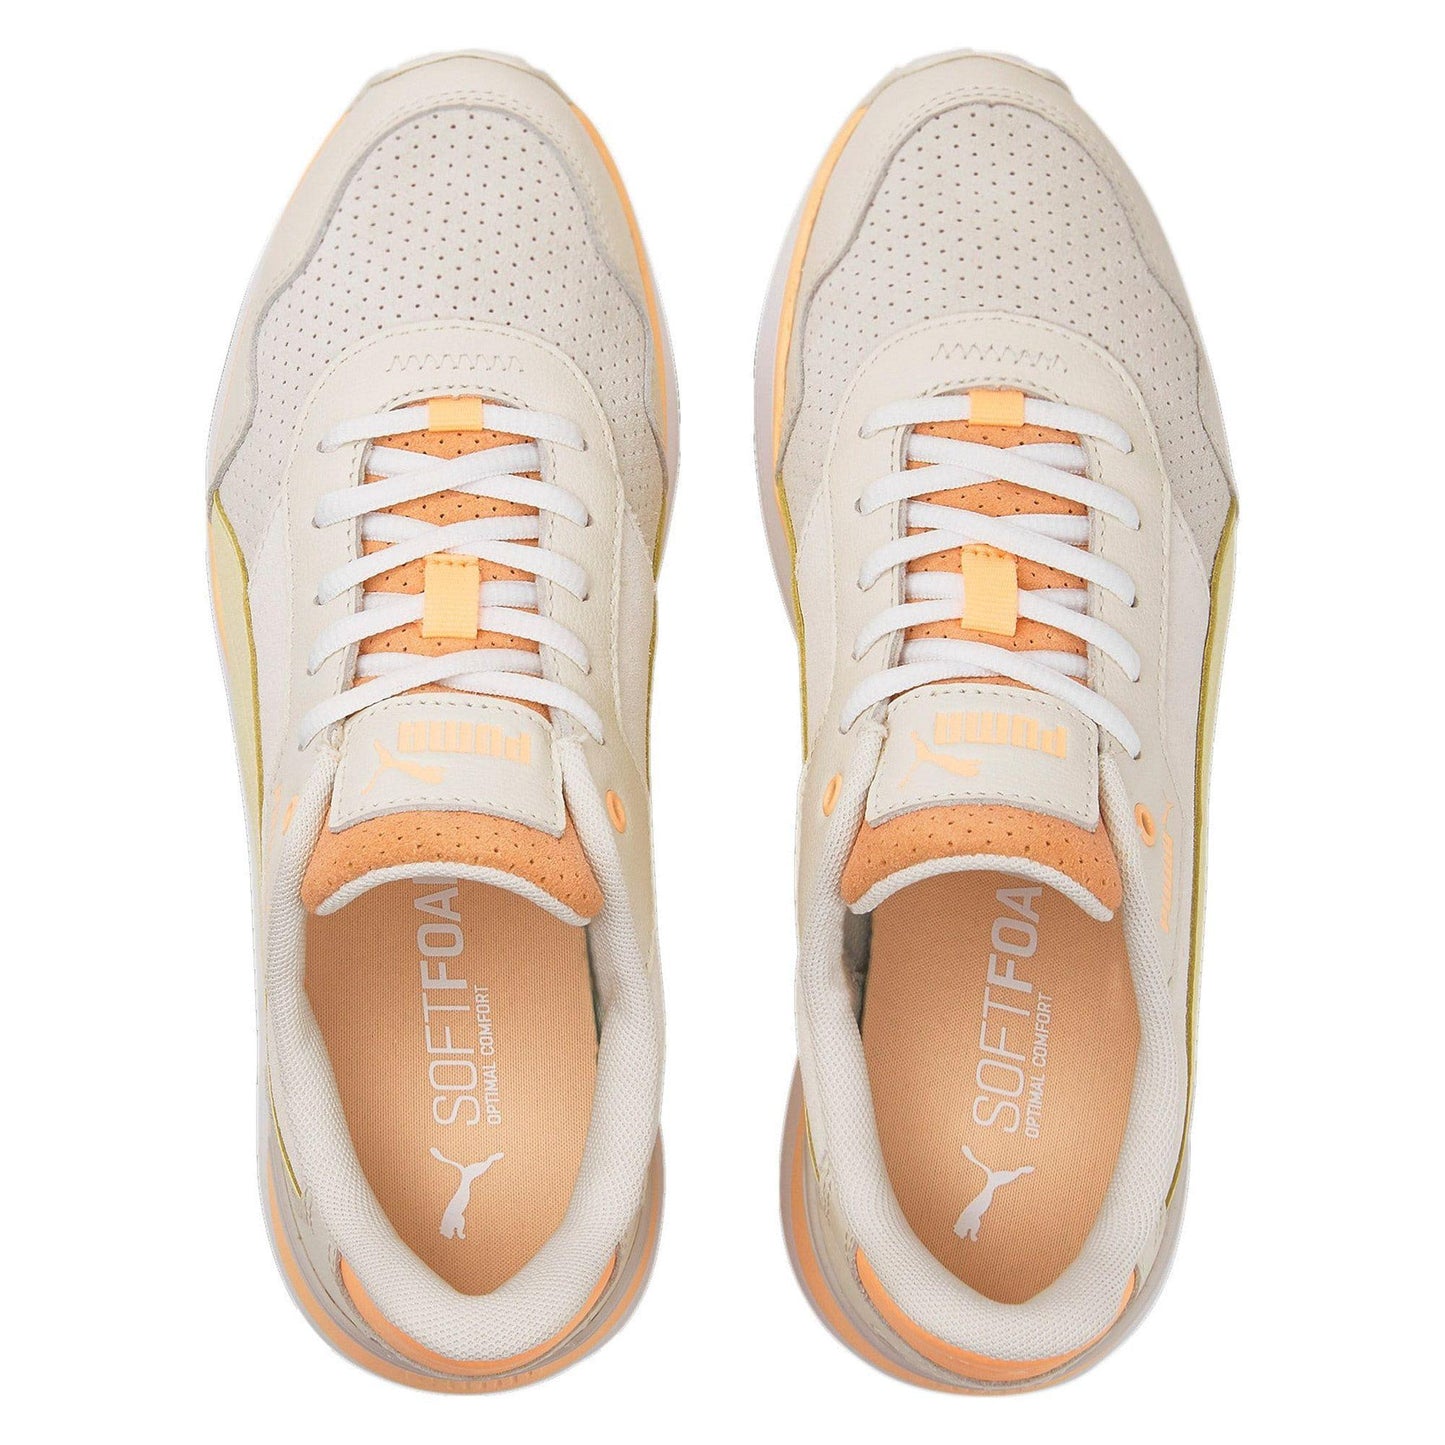 PUMA - נעלי ספורט לנשים R78 Voyage Premium בצבע בז וכתום - MASHBIR//365